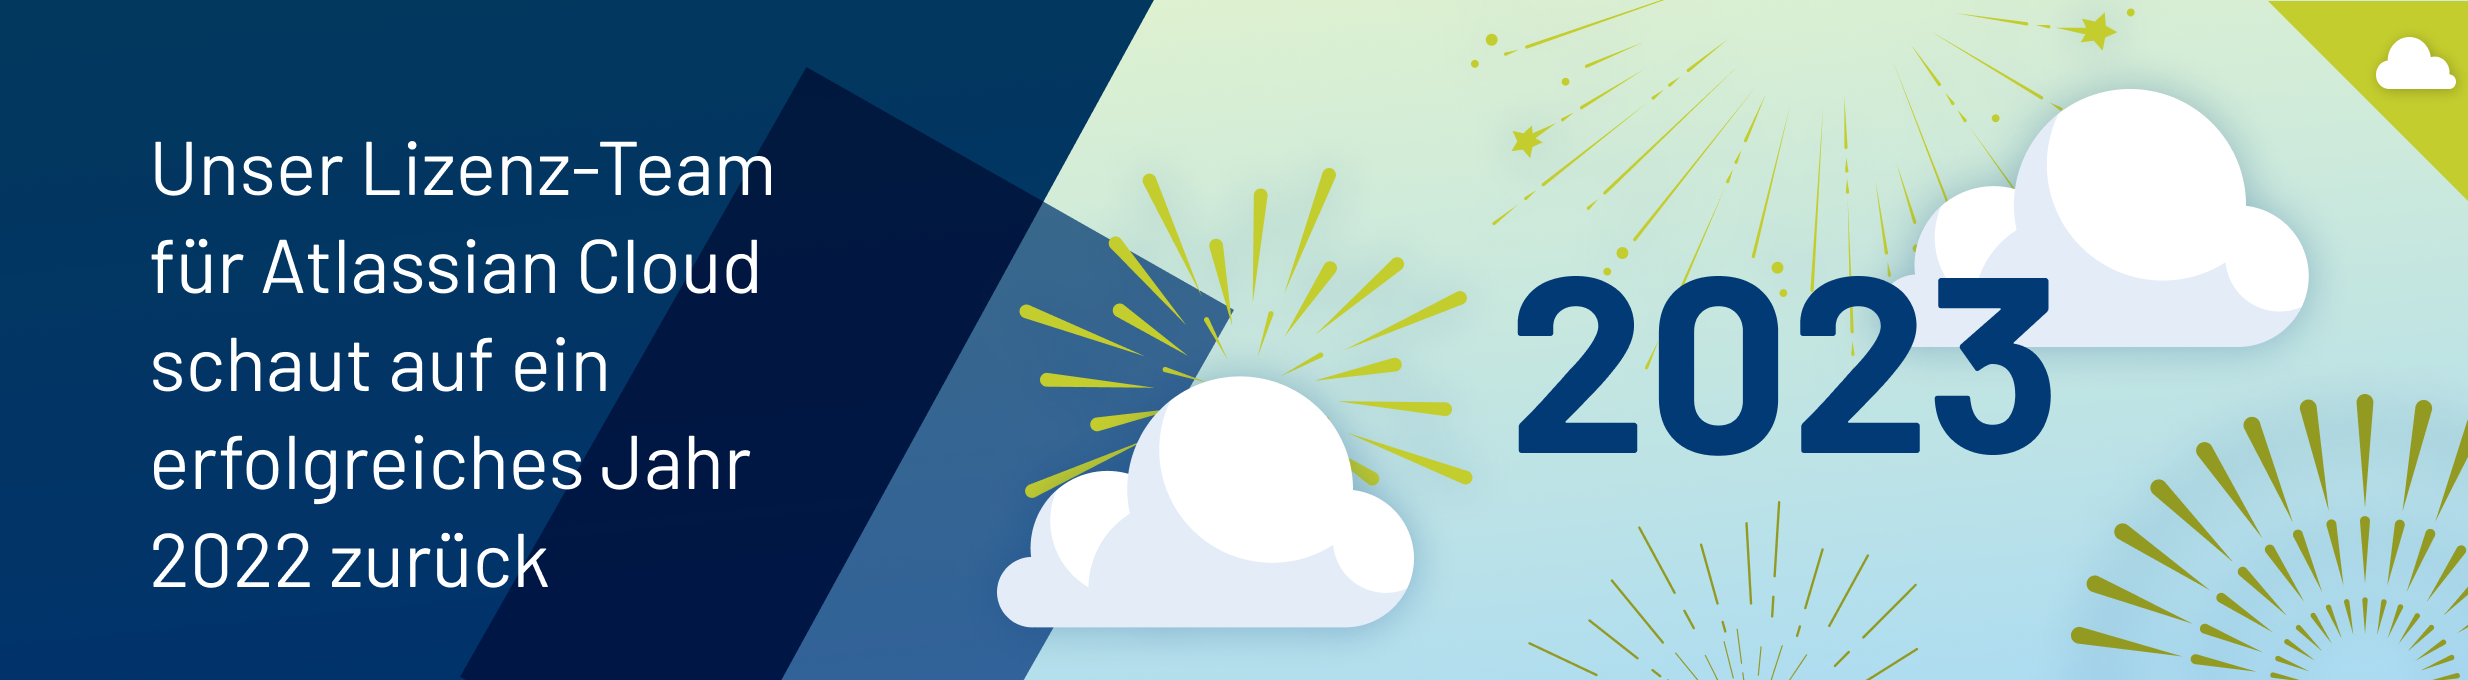 Eine Header-Grafik, auf der "2023" zu sehen ist, umgeben von Wolken und Feuerwerk. Daneben steht "Unser Linzenz-Team für Atlassian Cloud schaut auf ein erfolgreiches Jahr 2022 zurück".